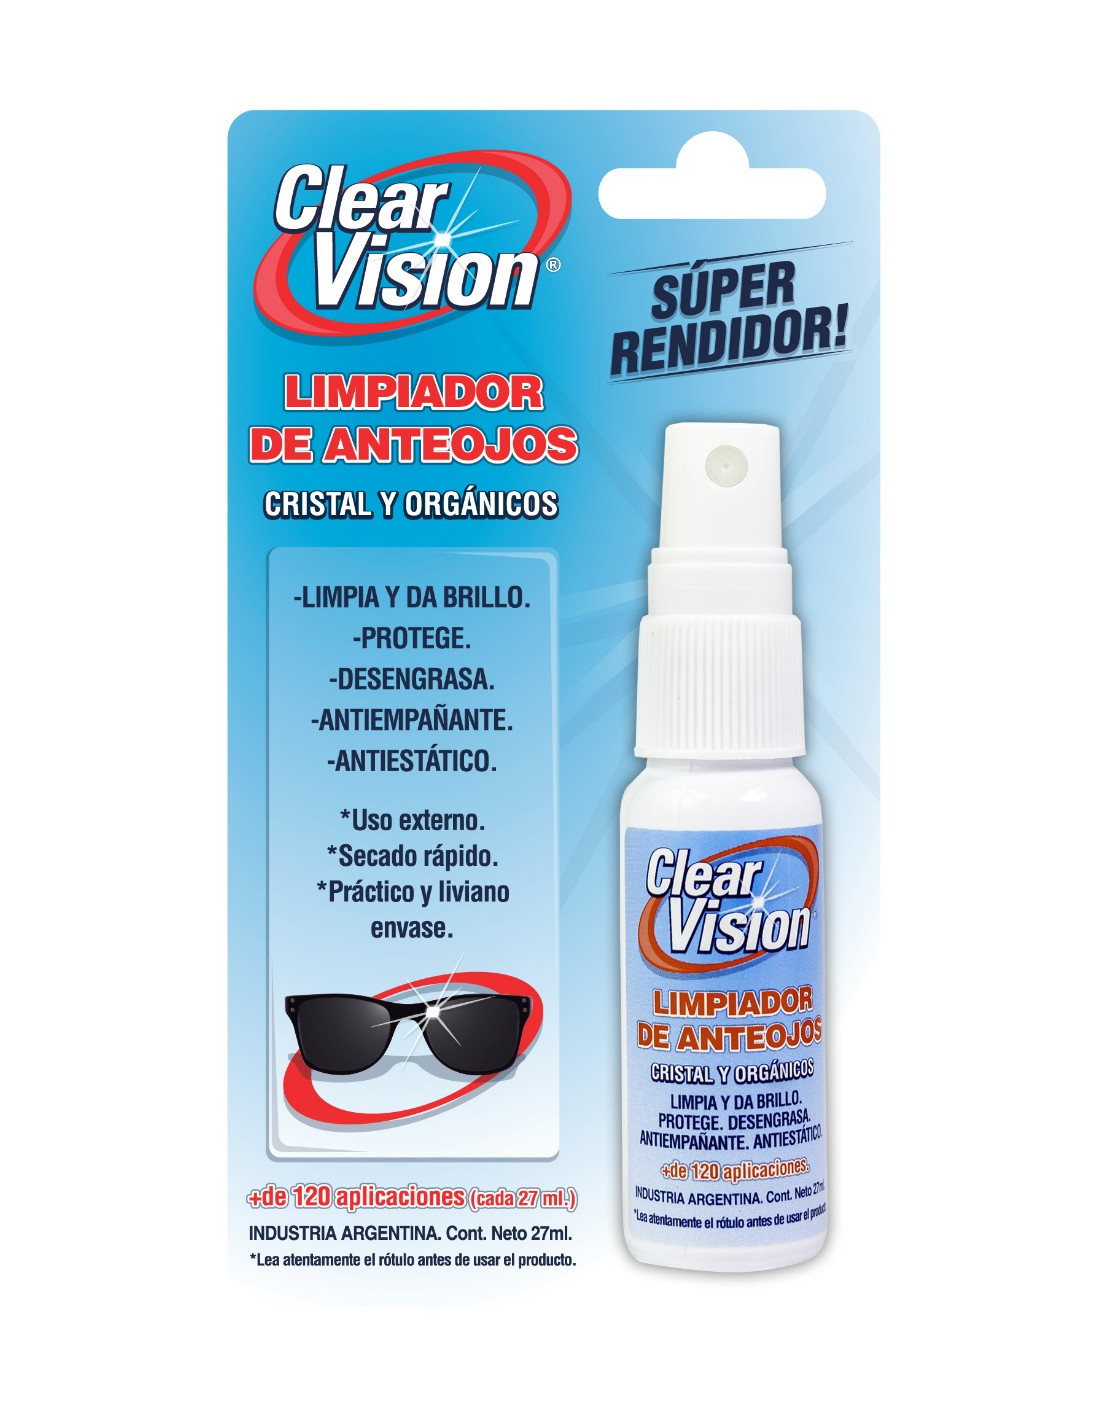 Clear Visión limpiador de anteojos en Farmacias y Perfumerias Rp